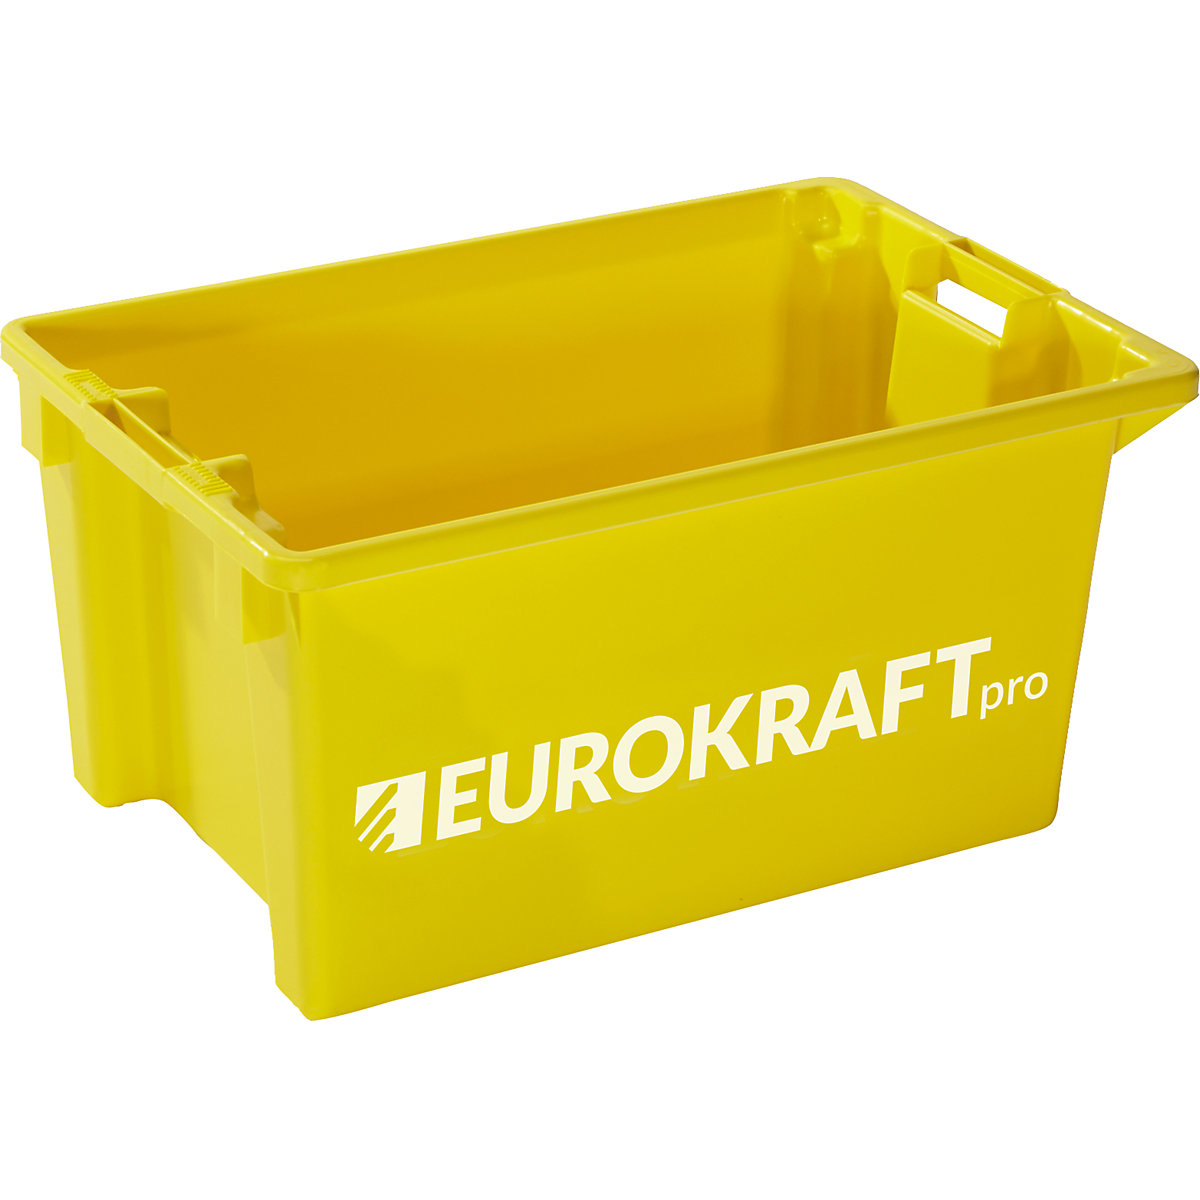 EUROKRAFTpro – Contenitori impilabili e girevoli, volume 50 l, conf. da 3 pezzi, giallo